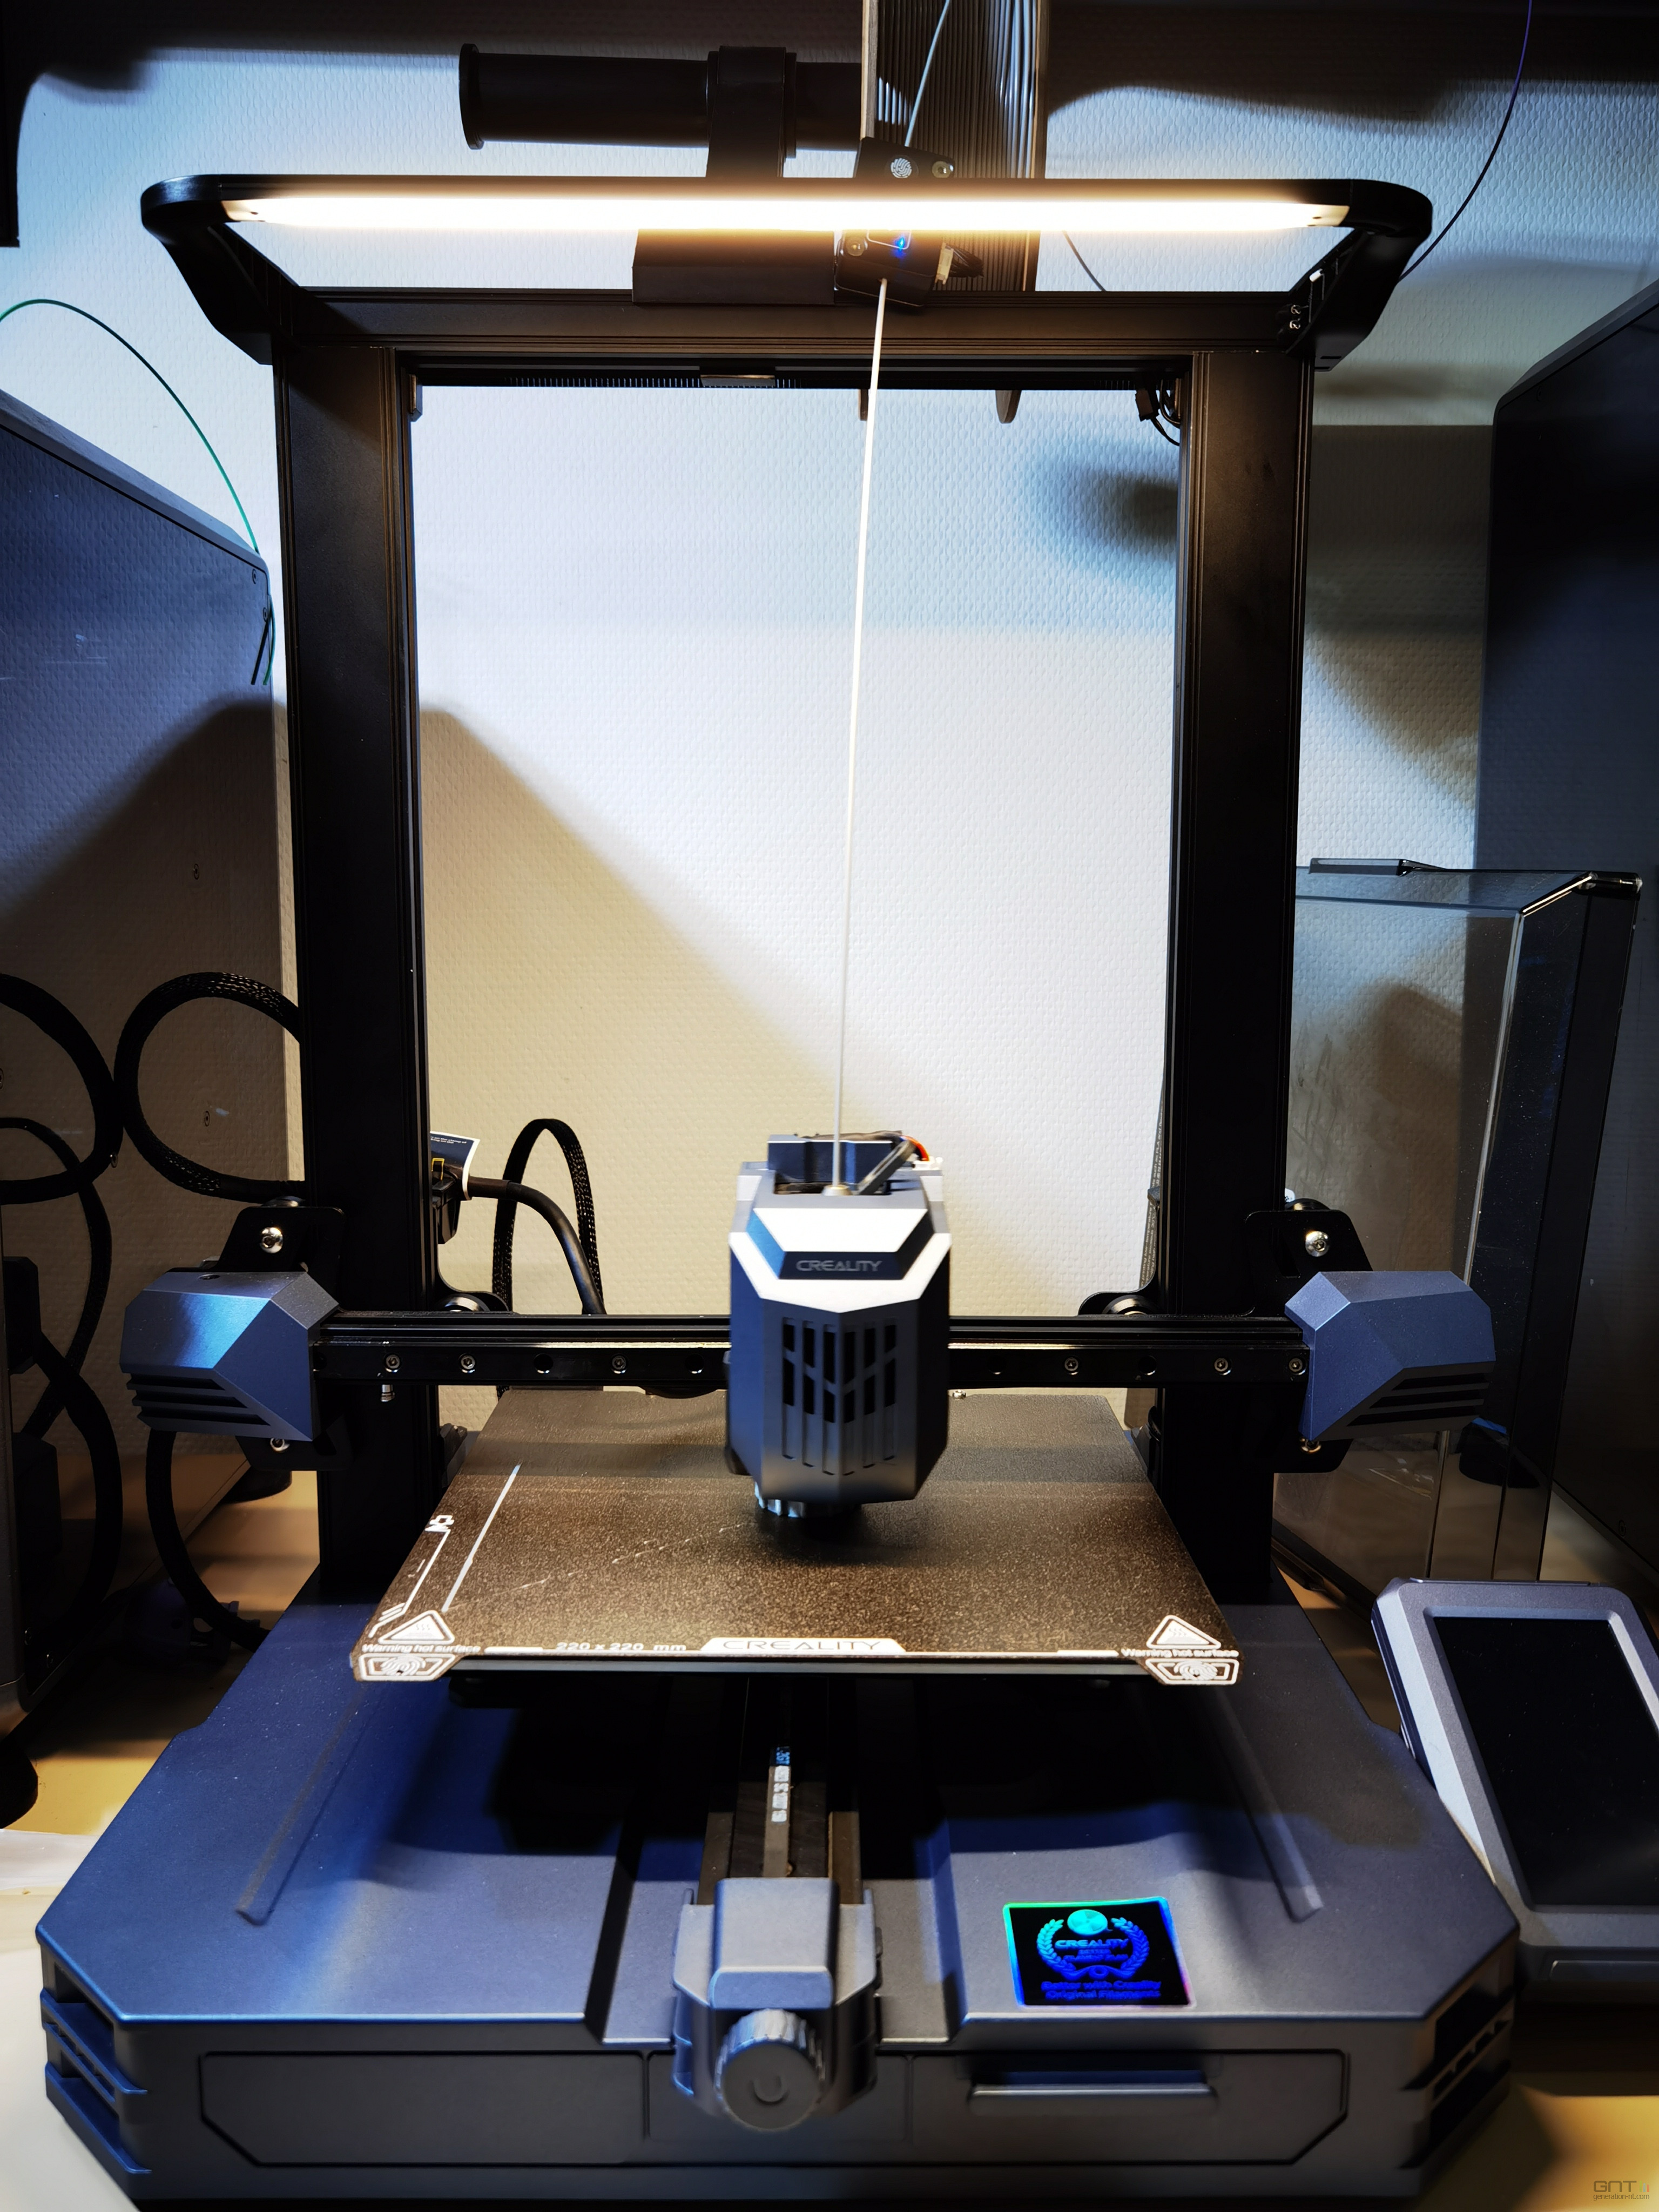 Test de l'imprimante 3D Creality CR-10 - 3Dnatives